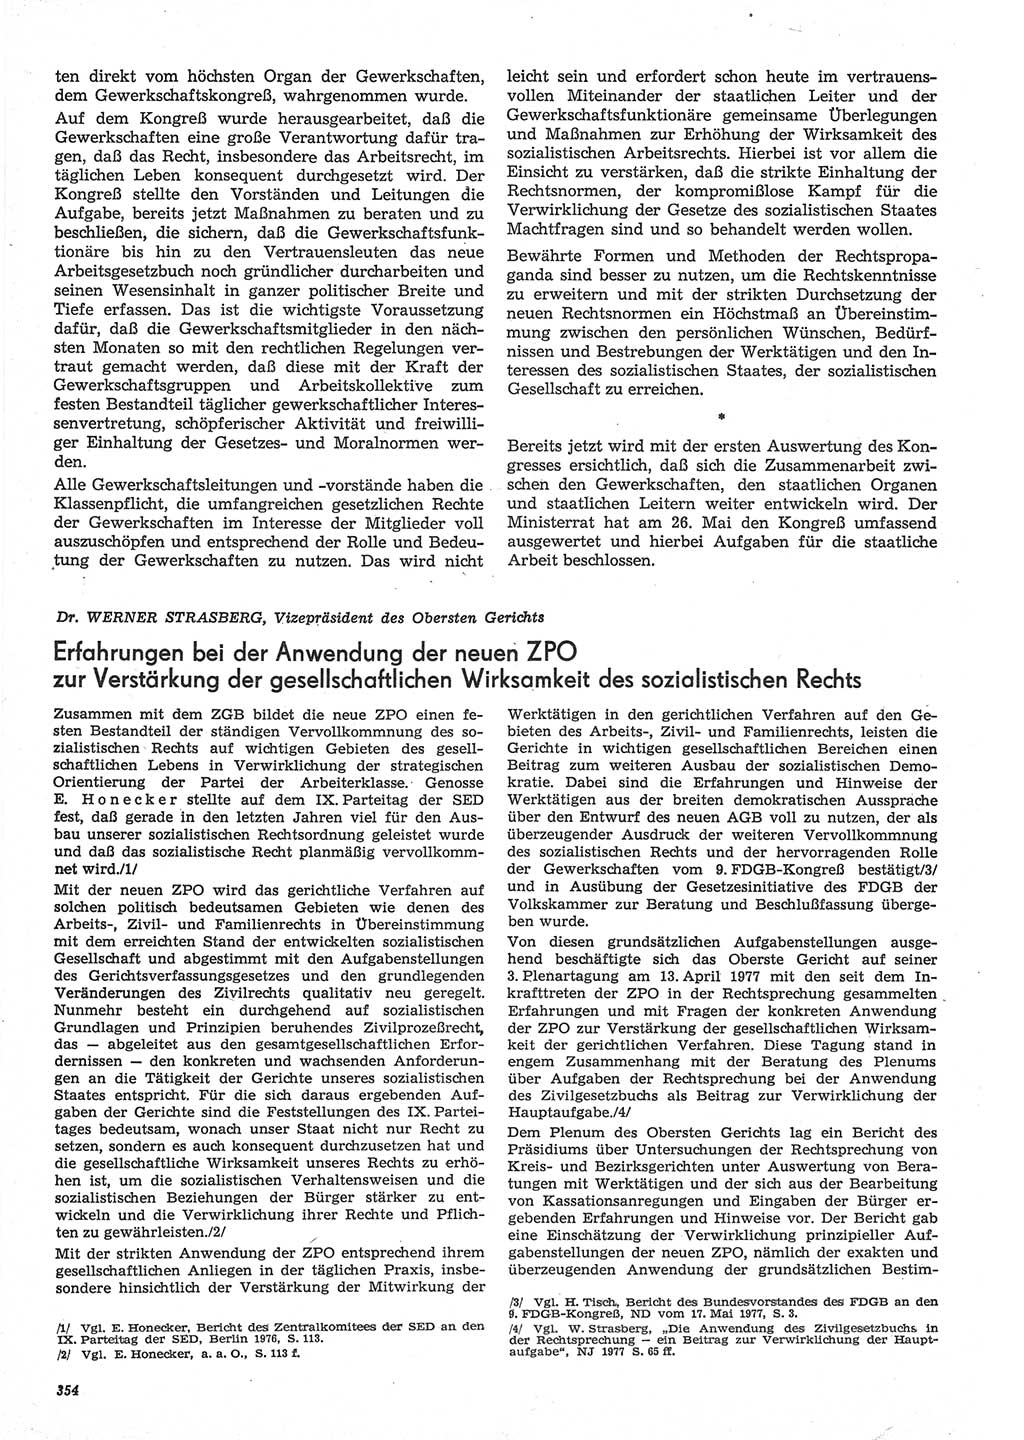 Neue Justiz (NJ), Zeitschrift für Recht und Rechtswissenschaft-Zeitschrift, sozialistisches Recht und Gesetzlichkeit, 31. Jahrgang 1977, Seite 354 (NJ DDR 1977, S. 354)